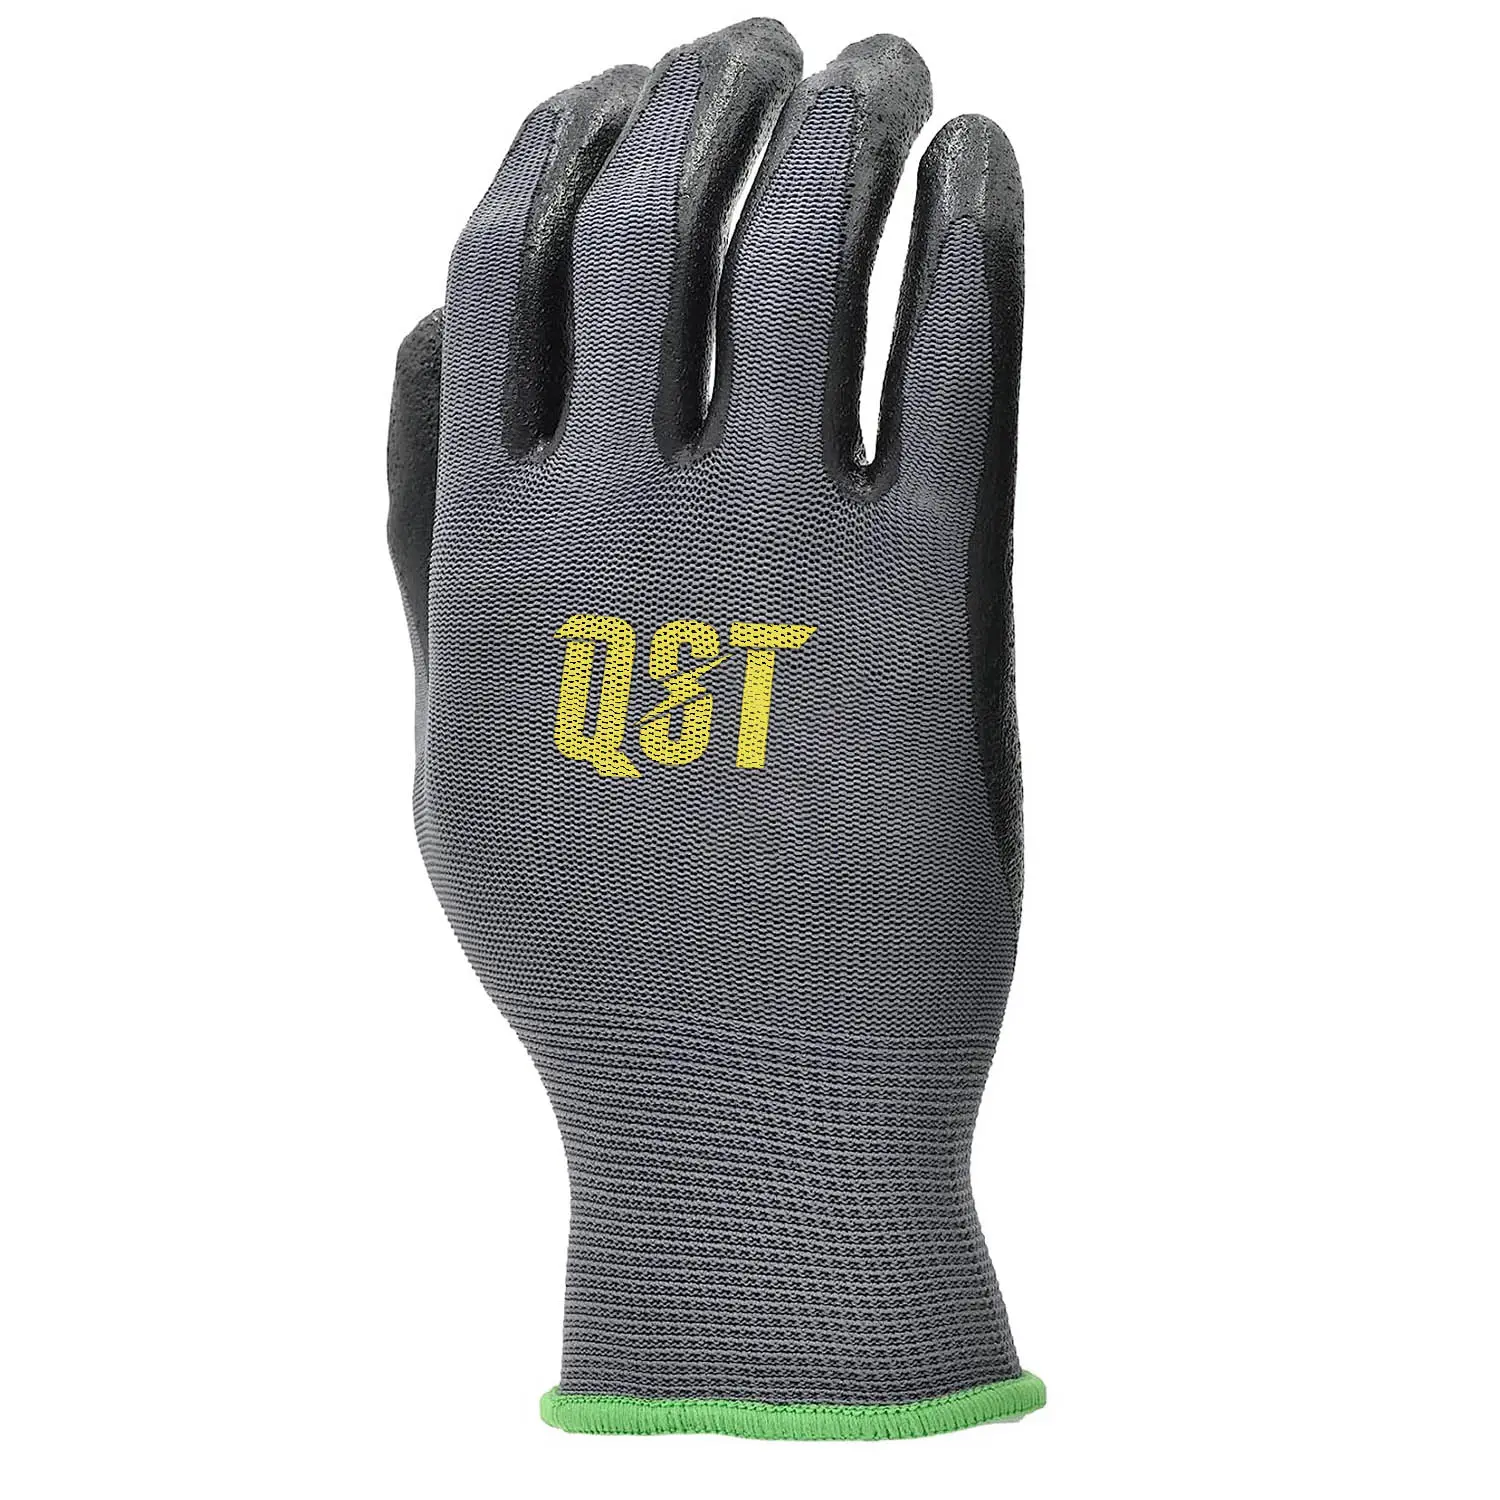 Nhà sản xuất người đàn ông công nghiệp Grip Heavy Duty làm việc găng tay an toàn tay latex & Thiết bị bảo vệ làm việc găng tay